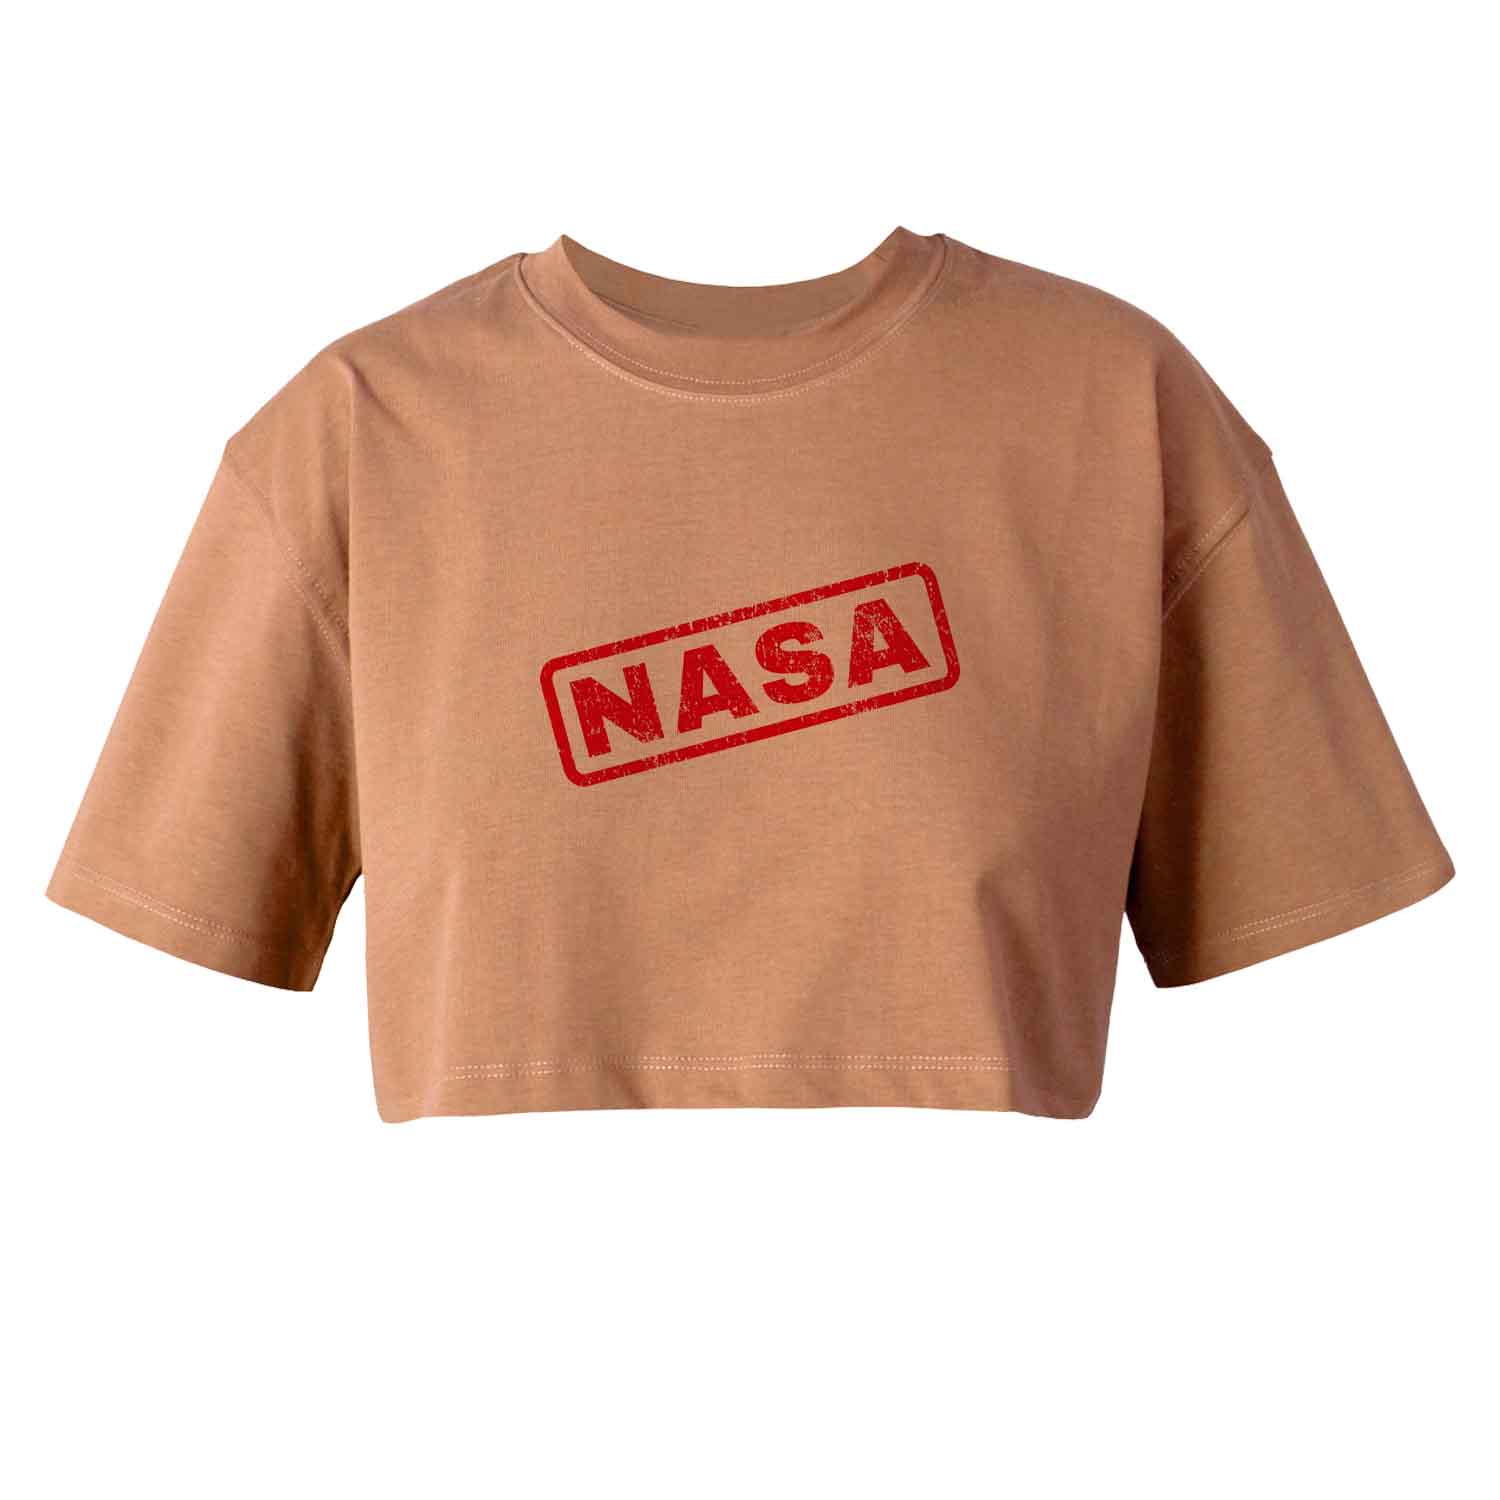 کراپ تاپ آستین کوتاه زنانه مدل ناسا کد K147 K